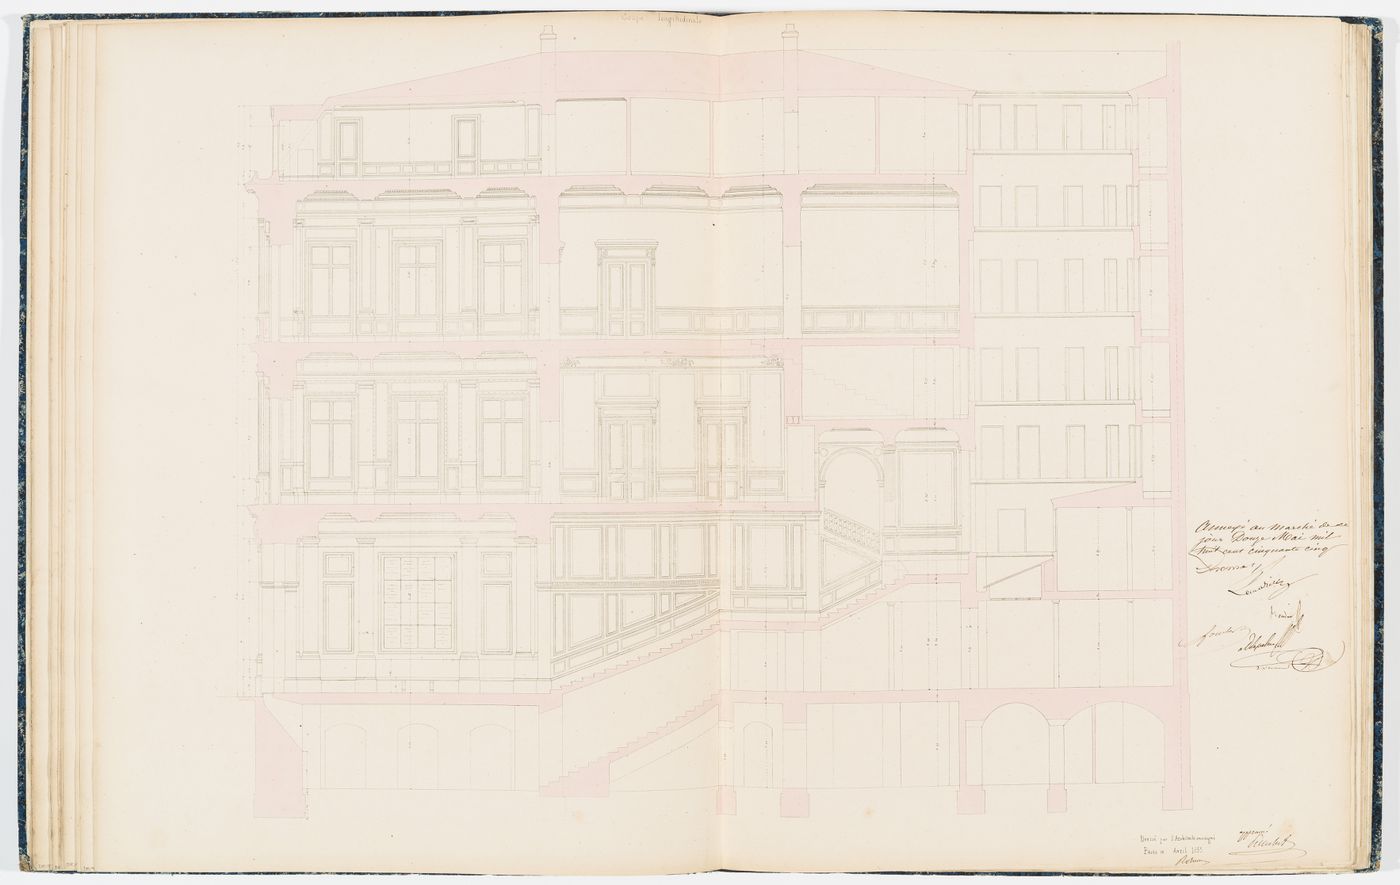 Contract drawing for the Chambre des Notaires: Longitudinal section showing details for the "vestibule", "salle de vente", "salle d'assemblées", "salon", and "grand escalier"